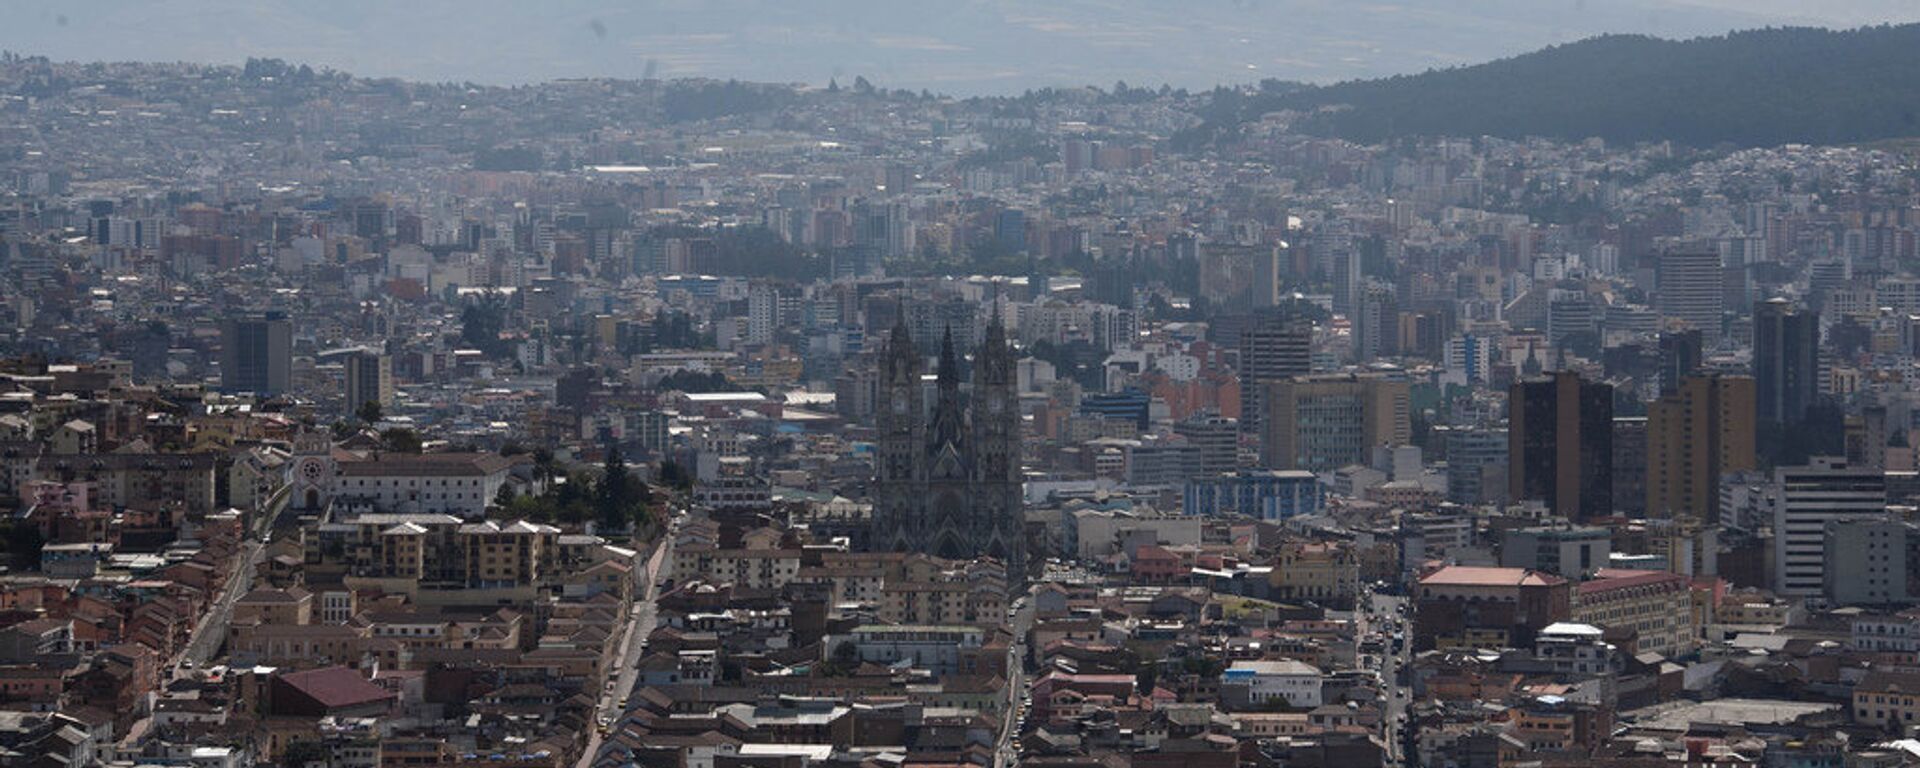 Quito, capital de Ecuador - Sputnik Mundo, 1920, 17.06.2021